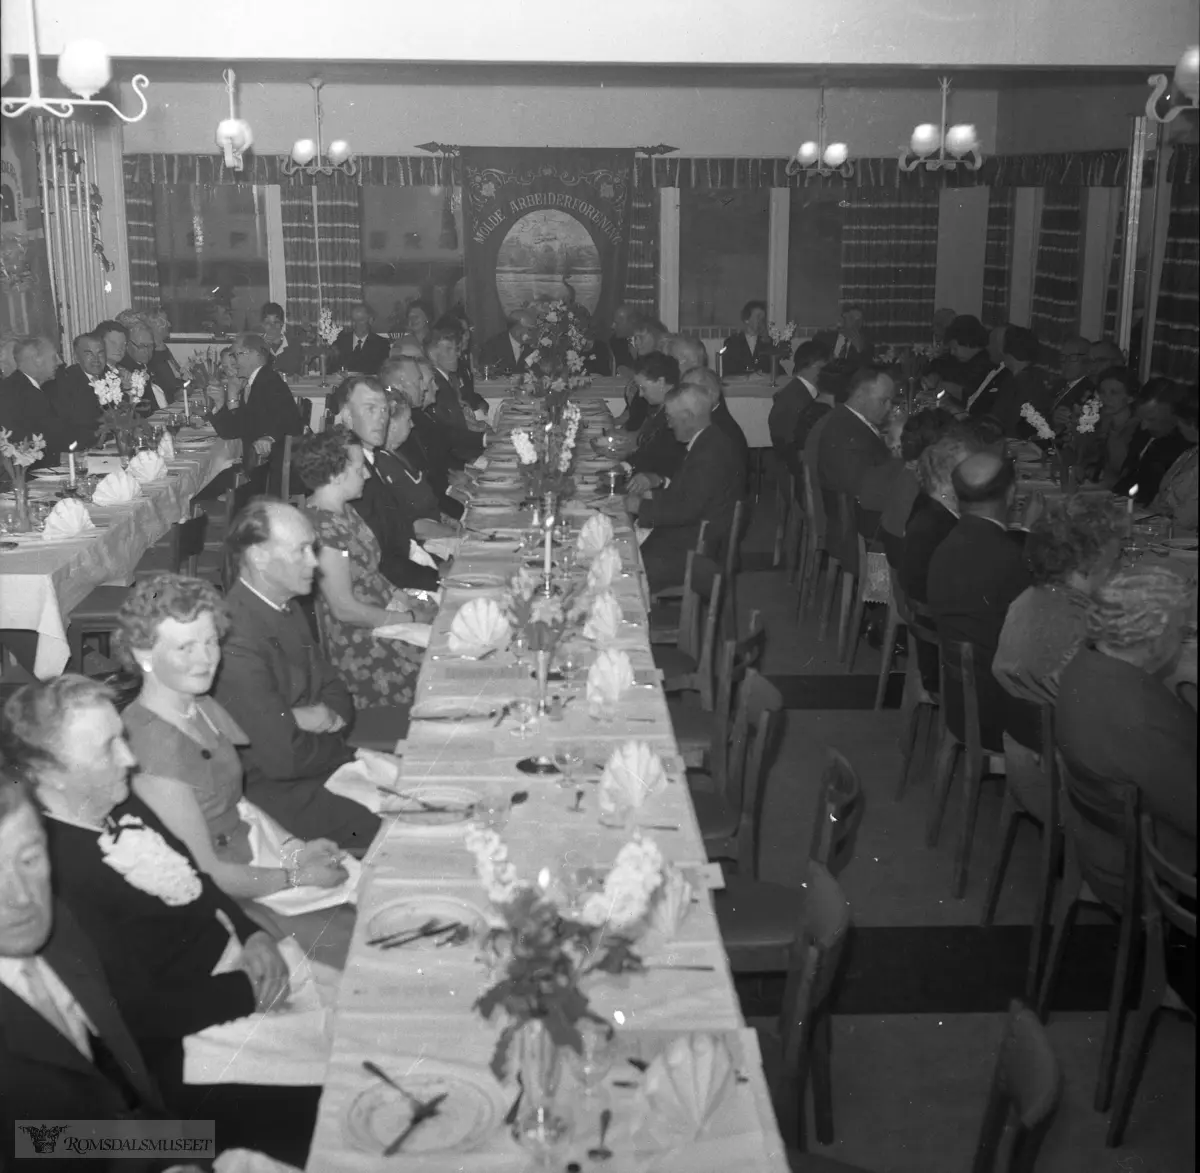 Molde arbeiderforenings 100-års fest på Torgstova i 1961.